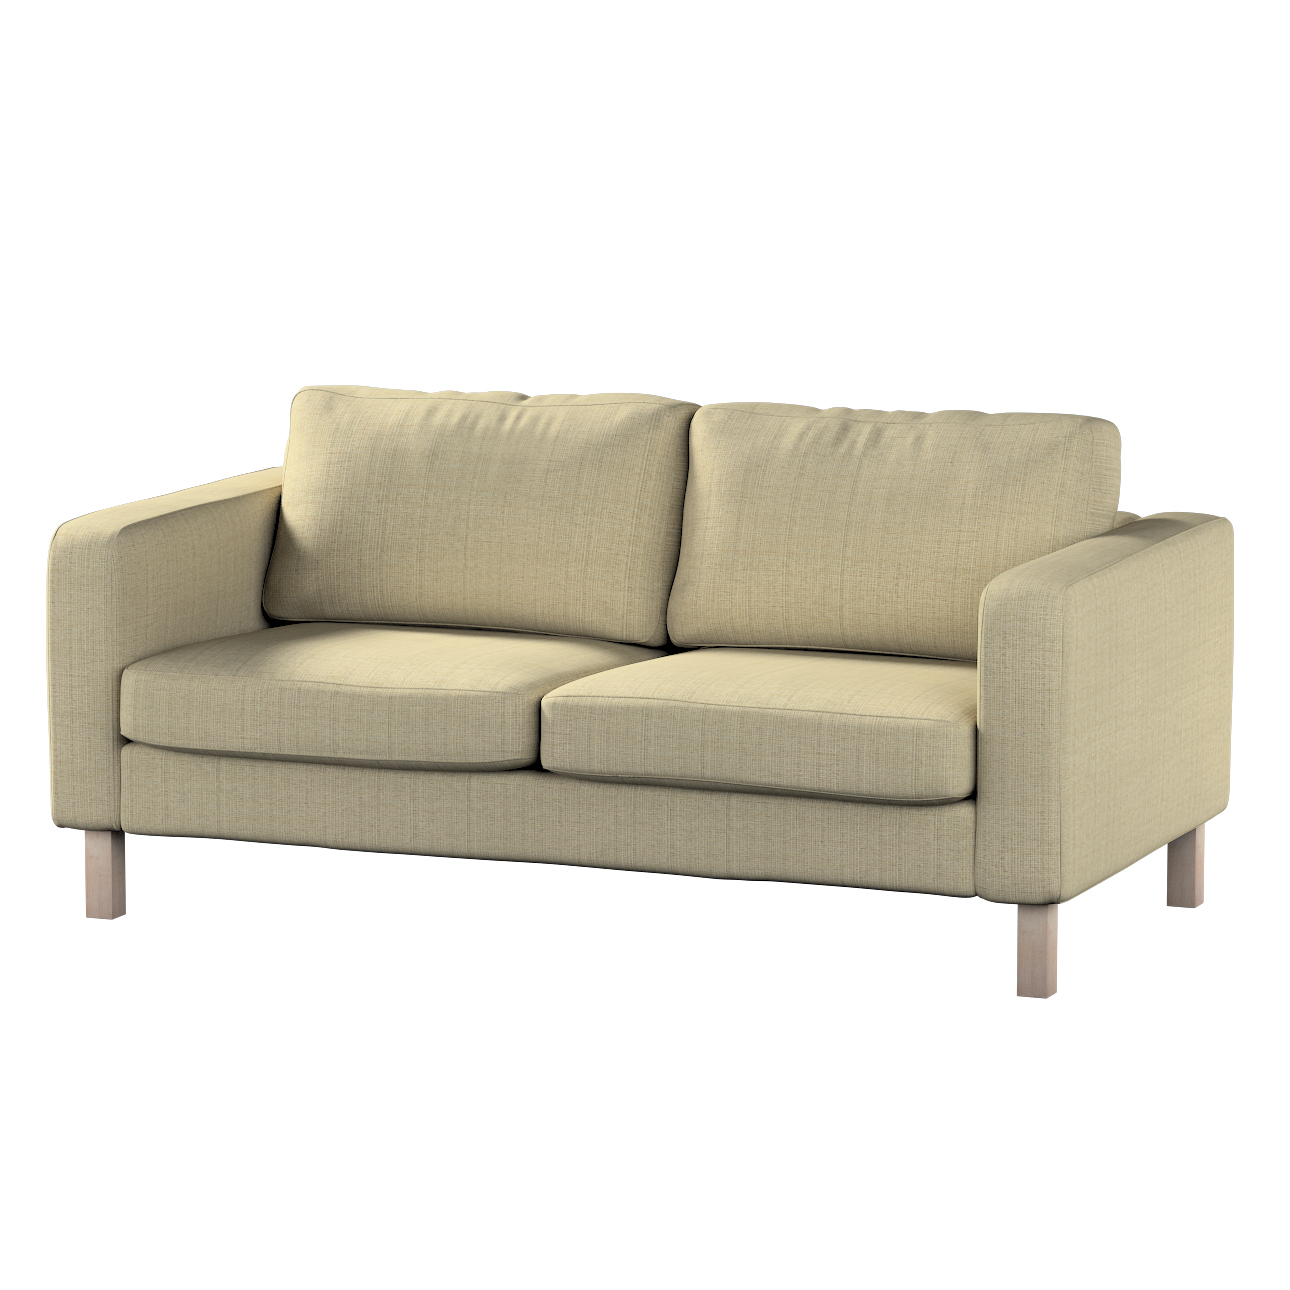 Bezug für Karlstad 2-Sitzer Sofa nicht ausklappbar, beige-creme, Sofahusse, günstig online kaufen